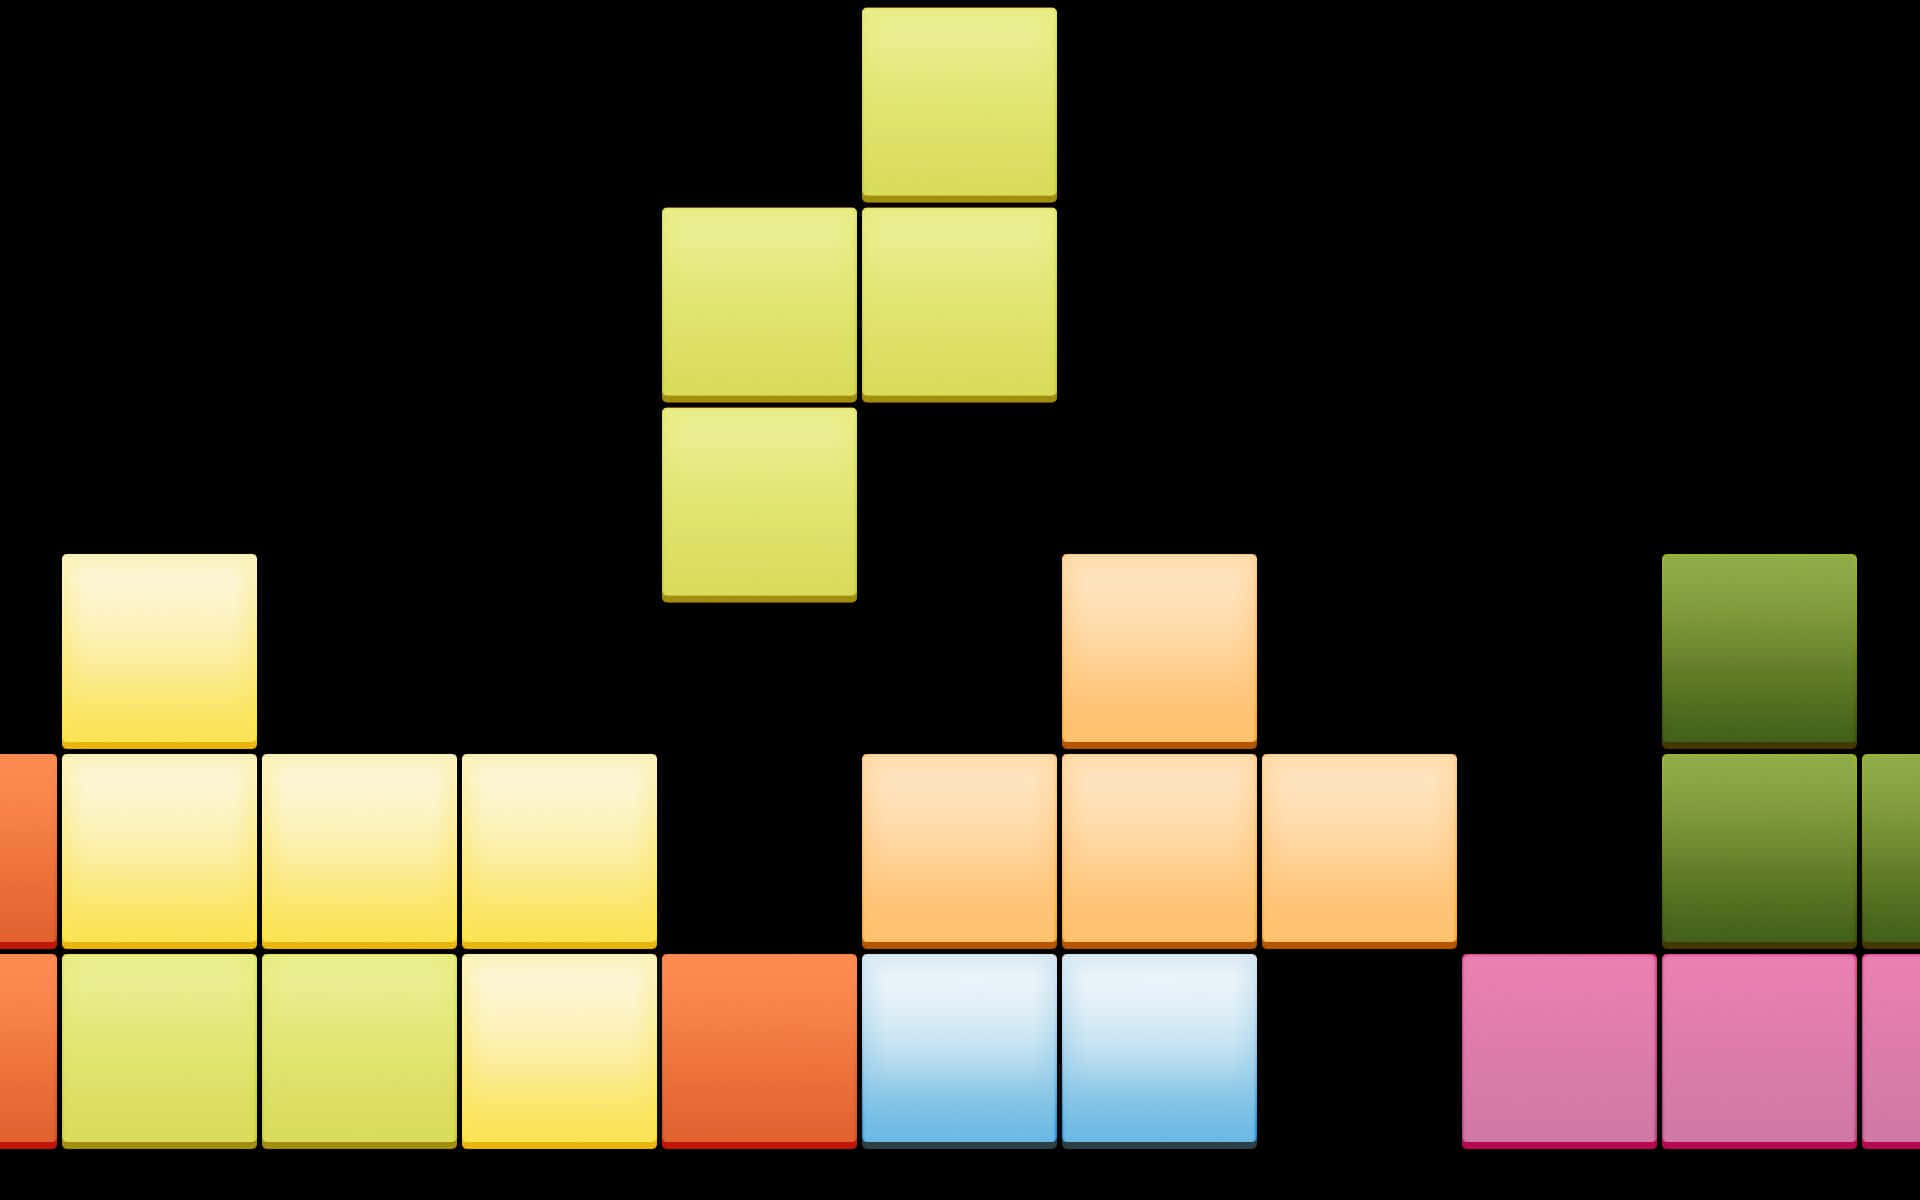 Tetrishintergrund Mit 1920 X 1200 Auflösung.